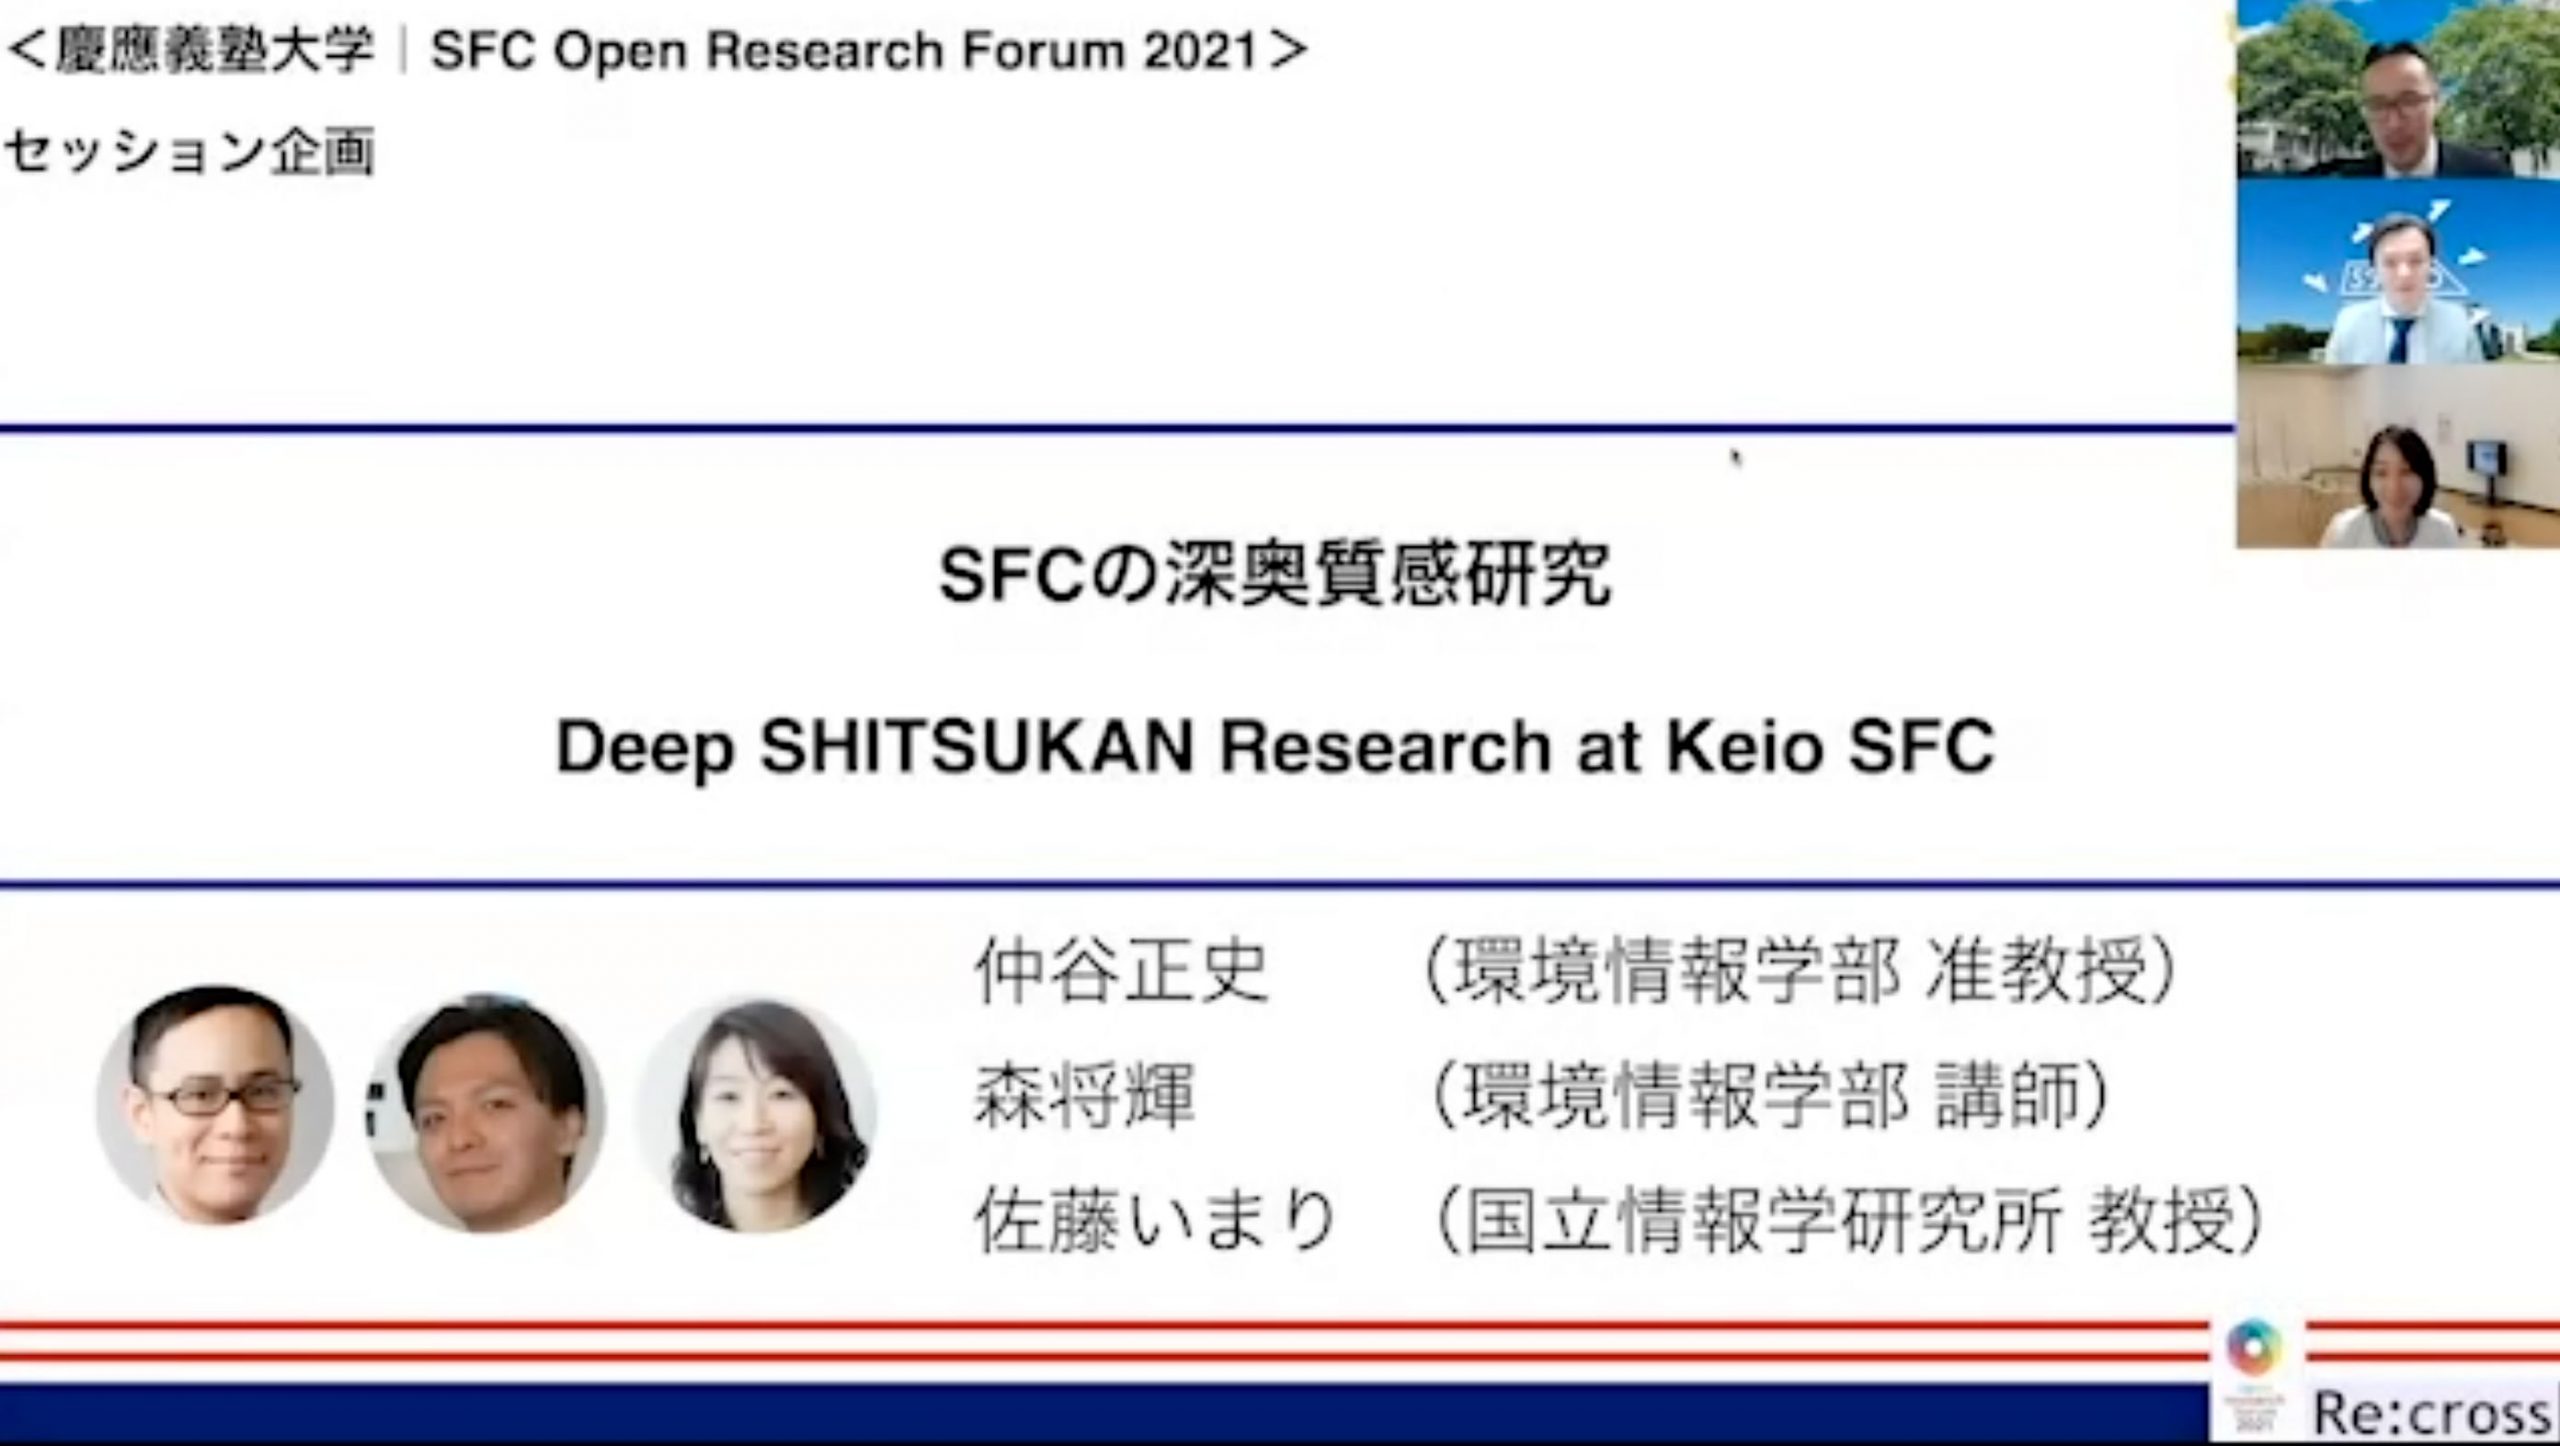 Deep SHITSUKAN Research at Keio SFC